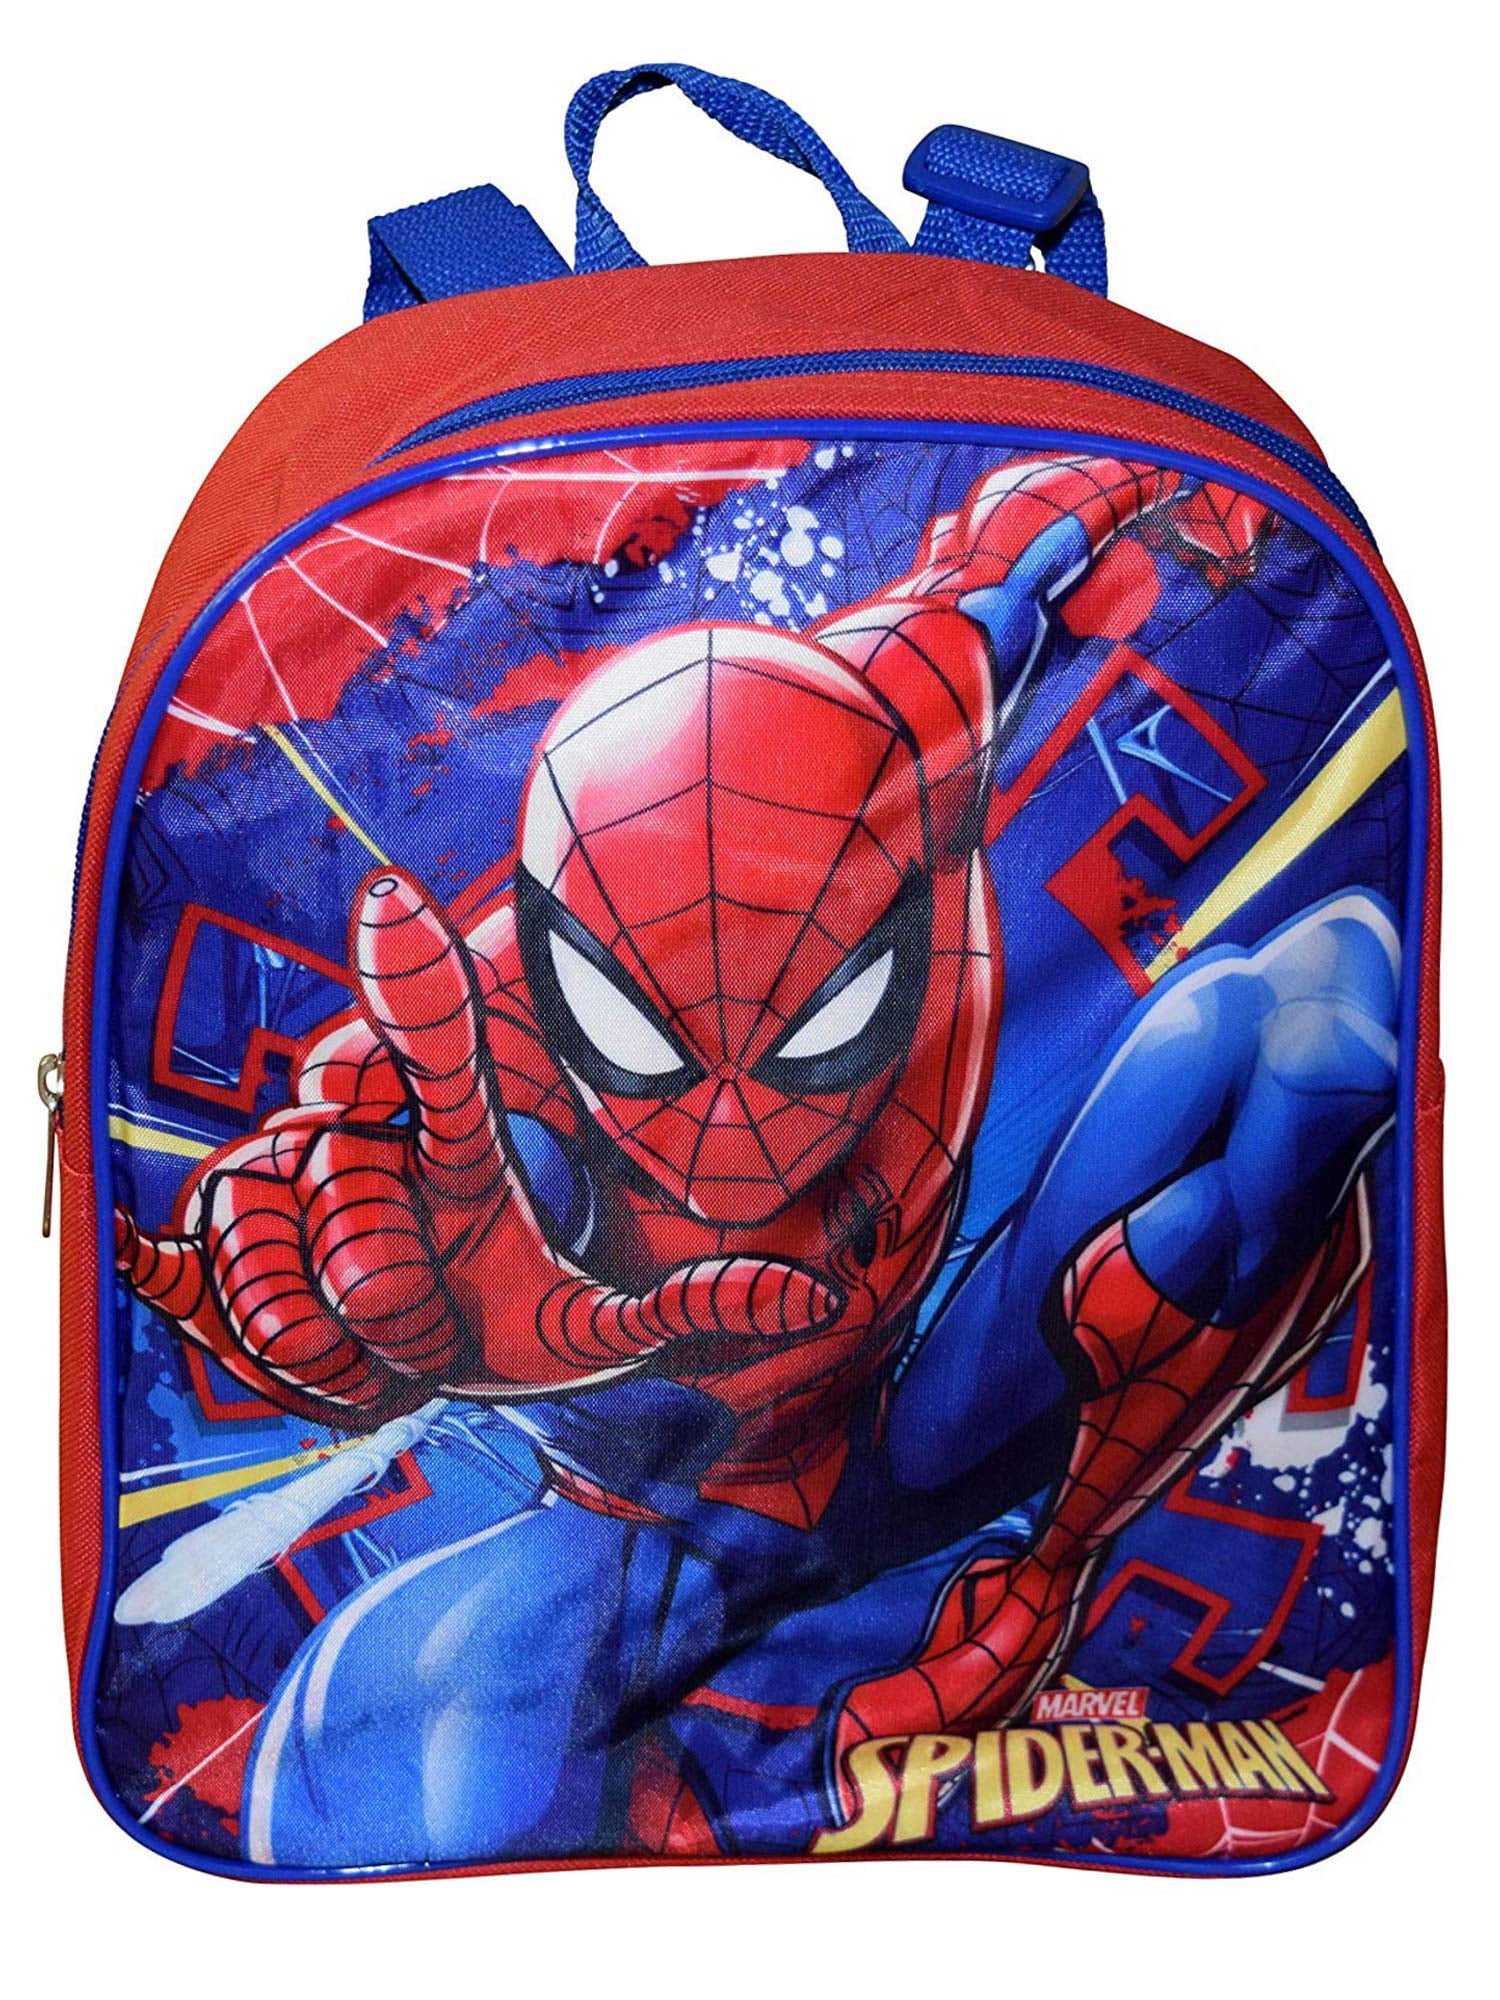 Marvel Spiderman 15" Little Boys PreK School Backpack Book bag Kids Avengers Red